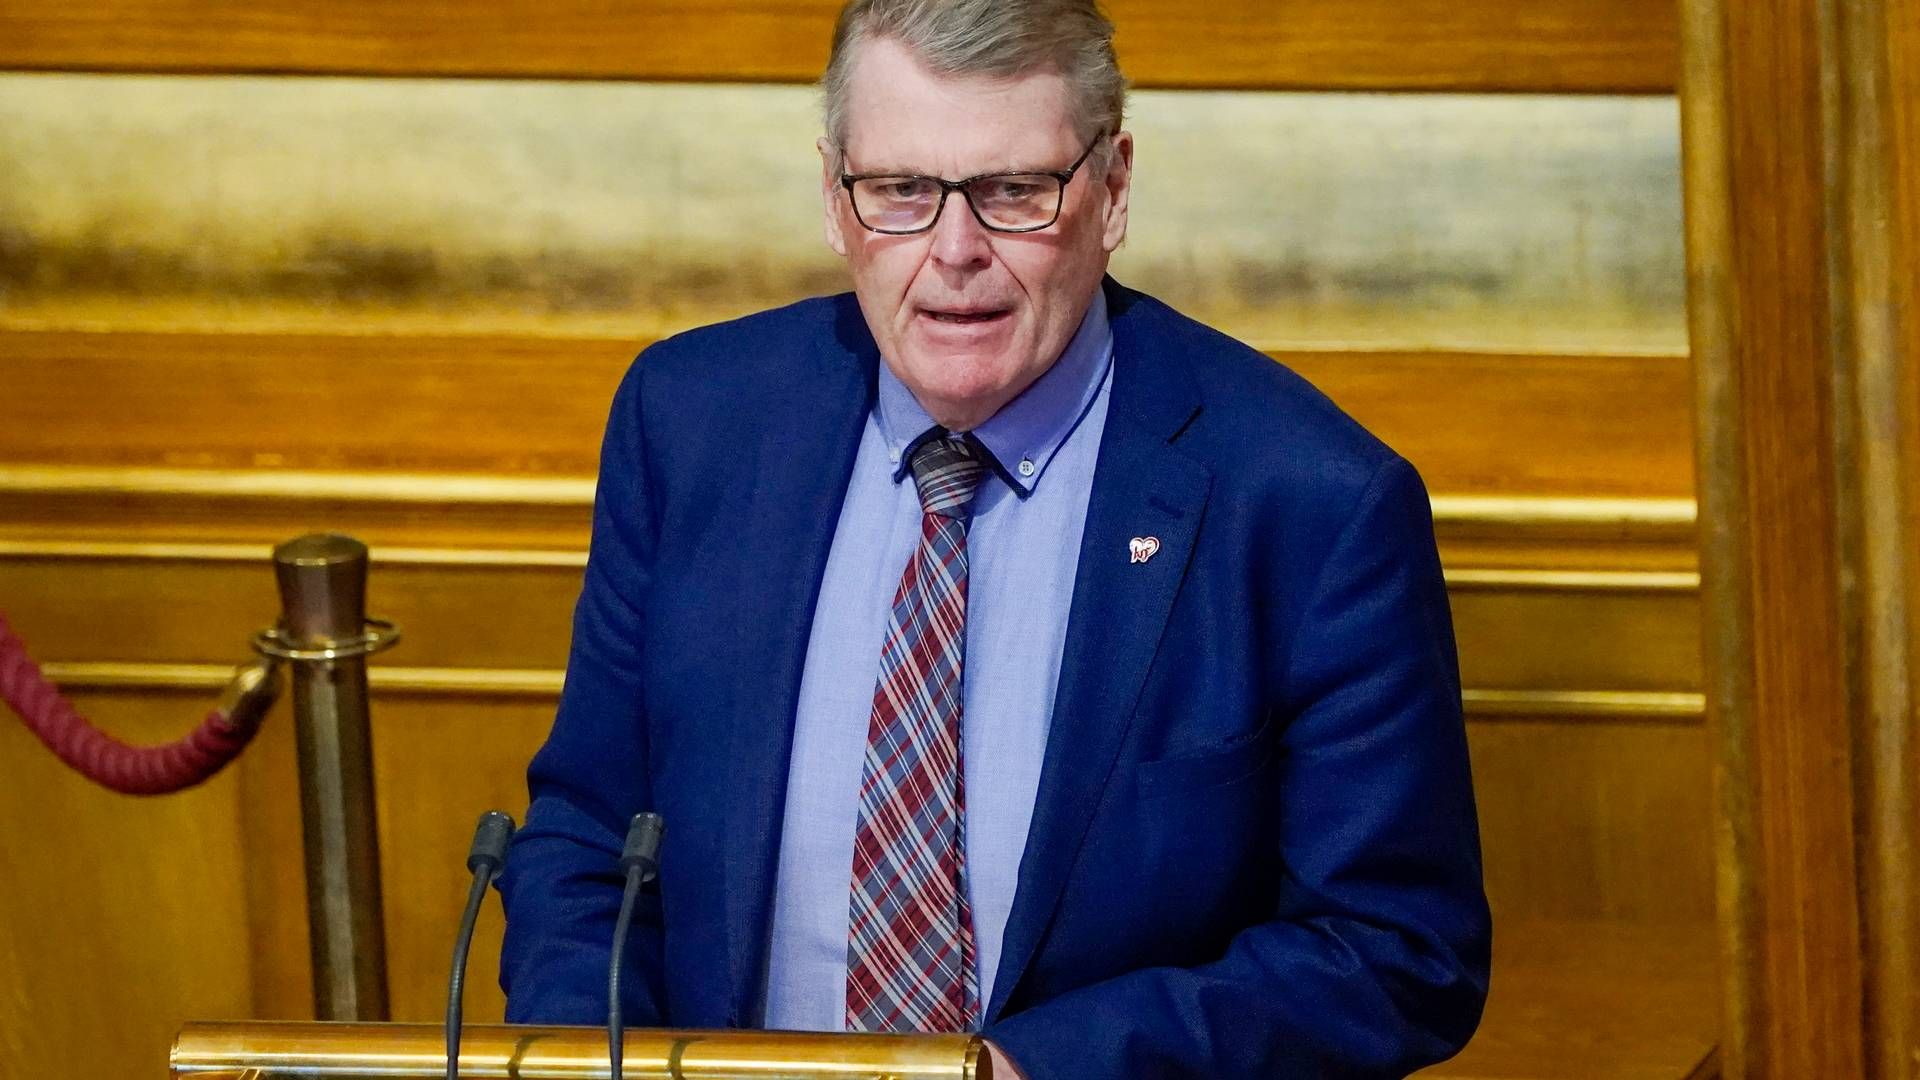 VIL GIRE OPP HAVVIND-SATSNING: Hans Fredrik Grøvan, her under en debatt i Stortinget i 2019. | Foto: Håkon Mosvold Larsen / NTB